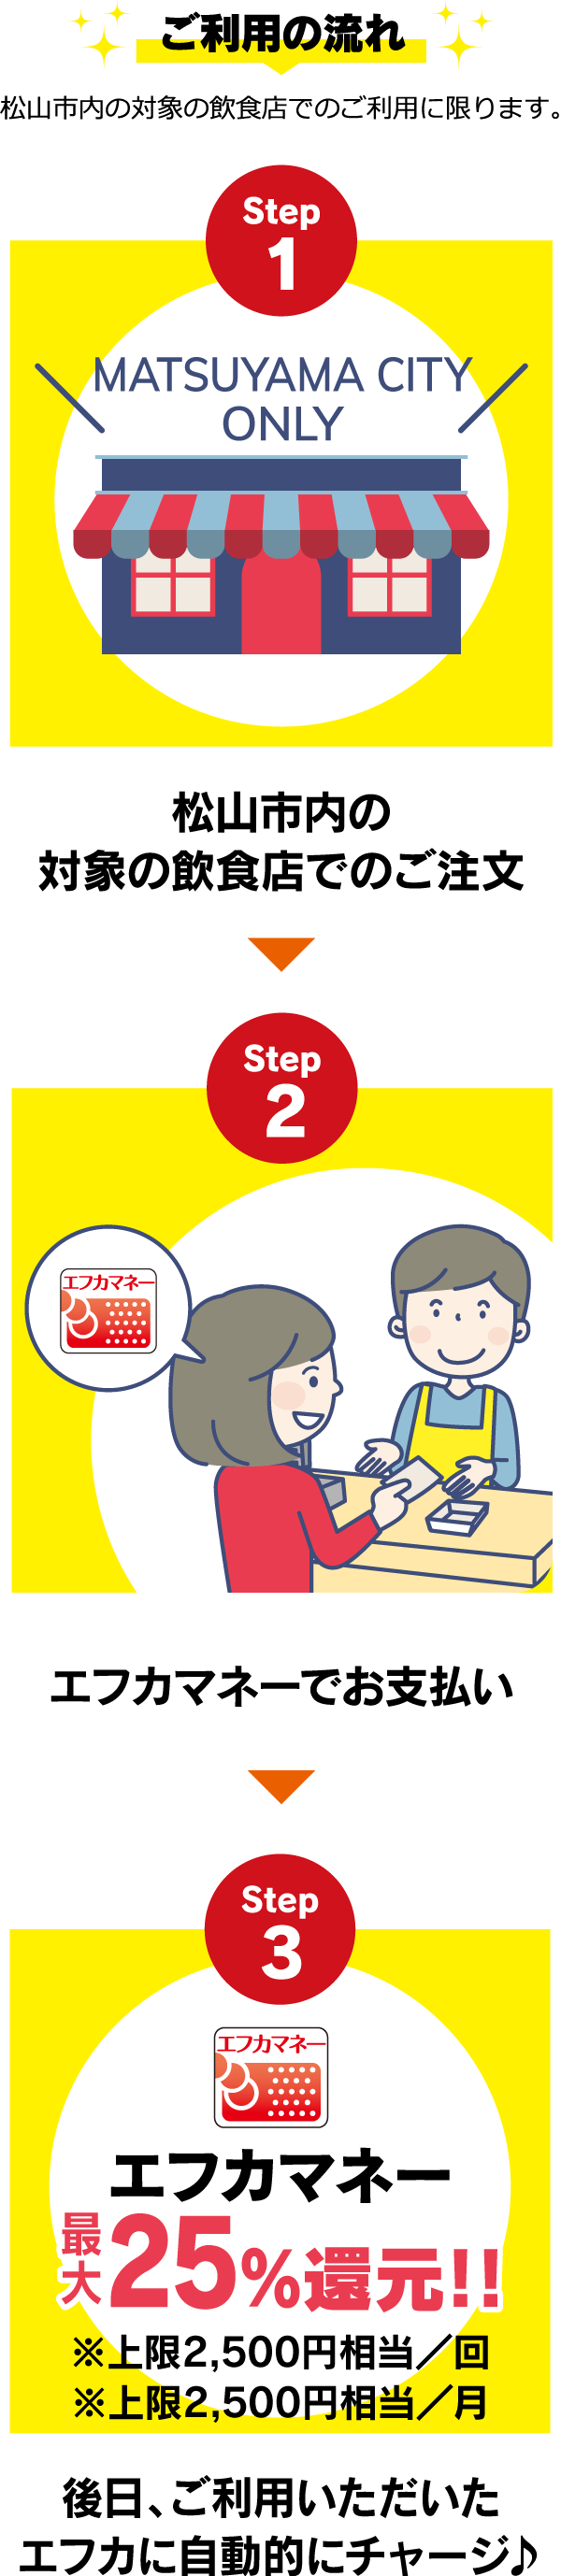 ご利用の流れ 松山市の対象の飲食店でのご利用に限ります。 step1:松山市内の対象の飲食店でのご注文 step2:エフカマネーでお支払い step3:後日、ご利用いただいたエフカに自動的にチャージ♪